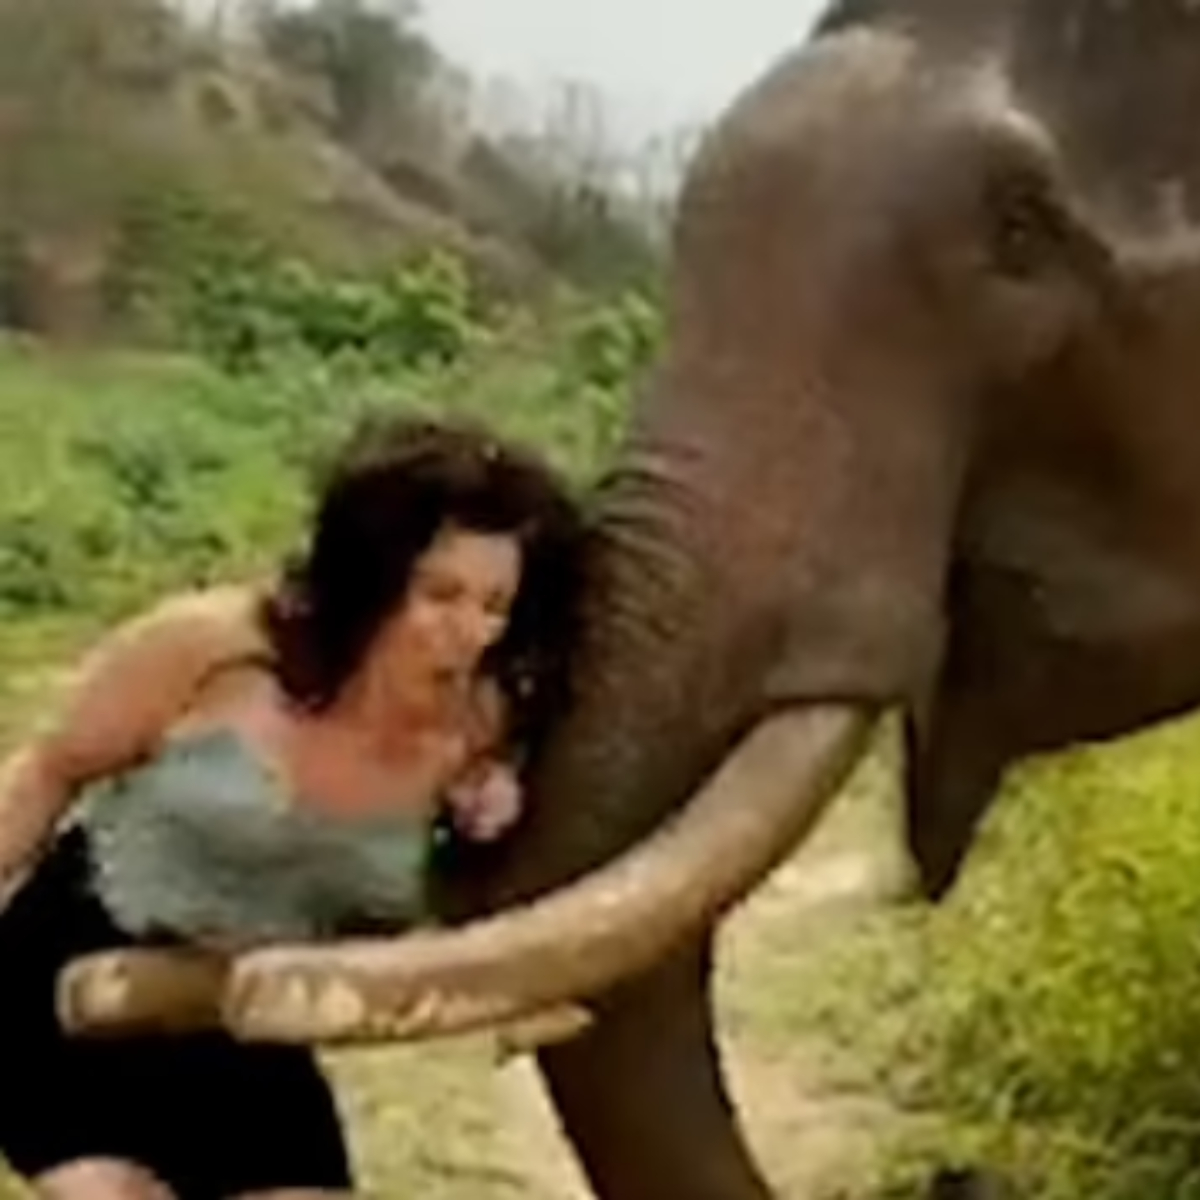  mulher-brinca-elefante-esmagada1 